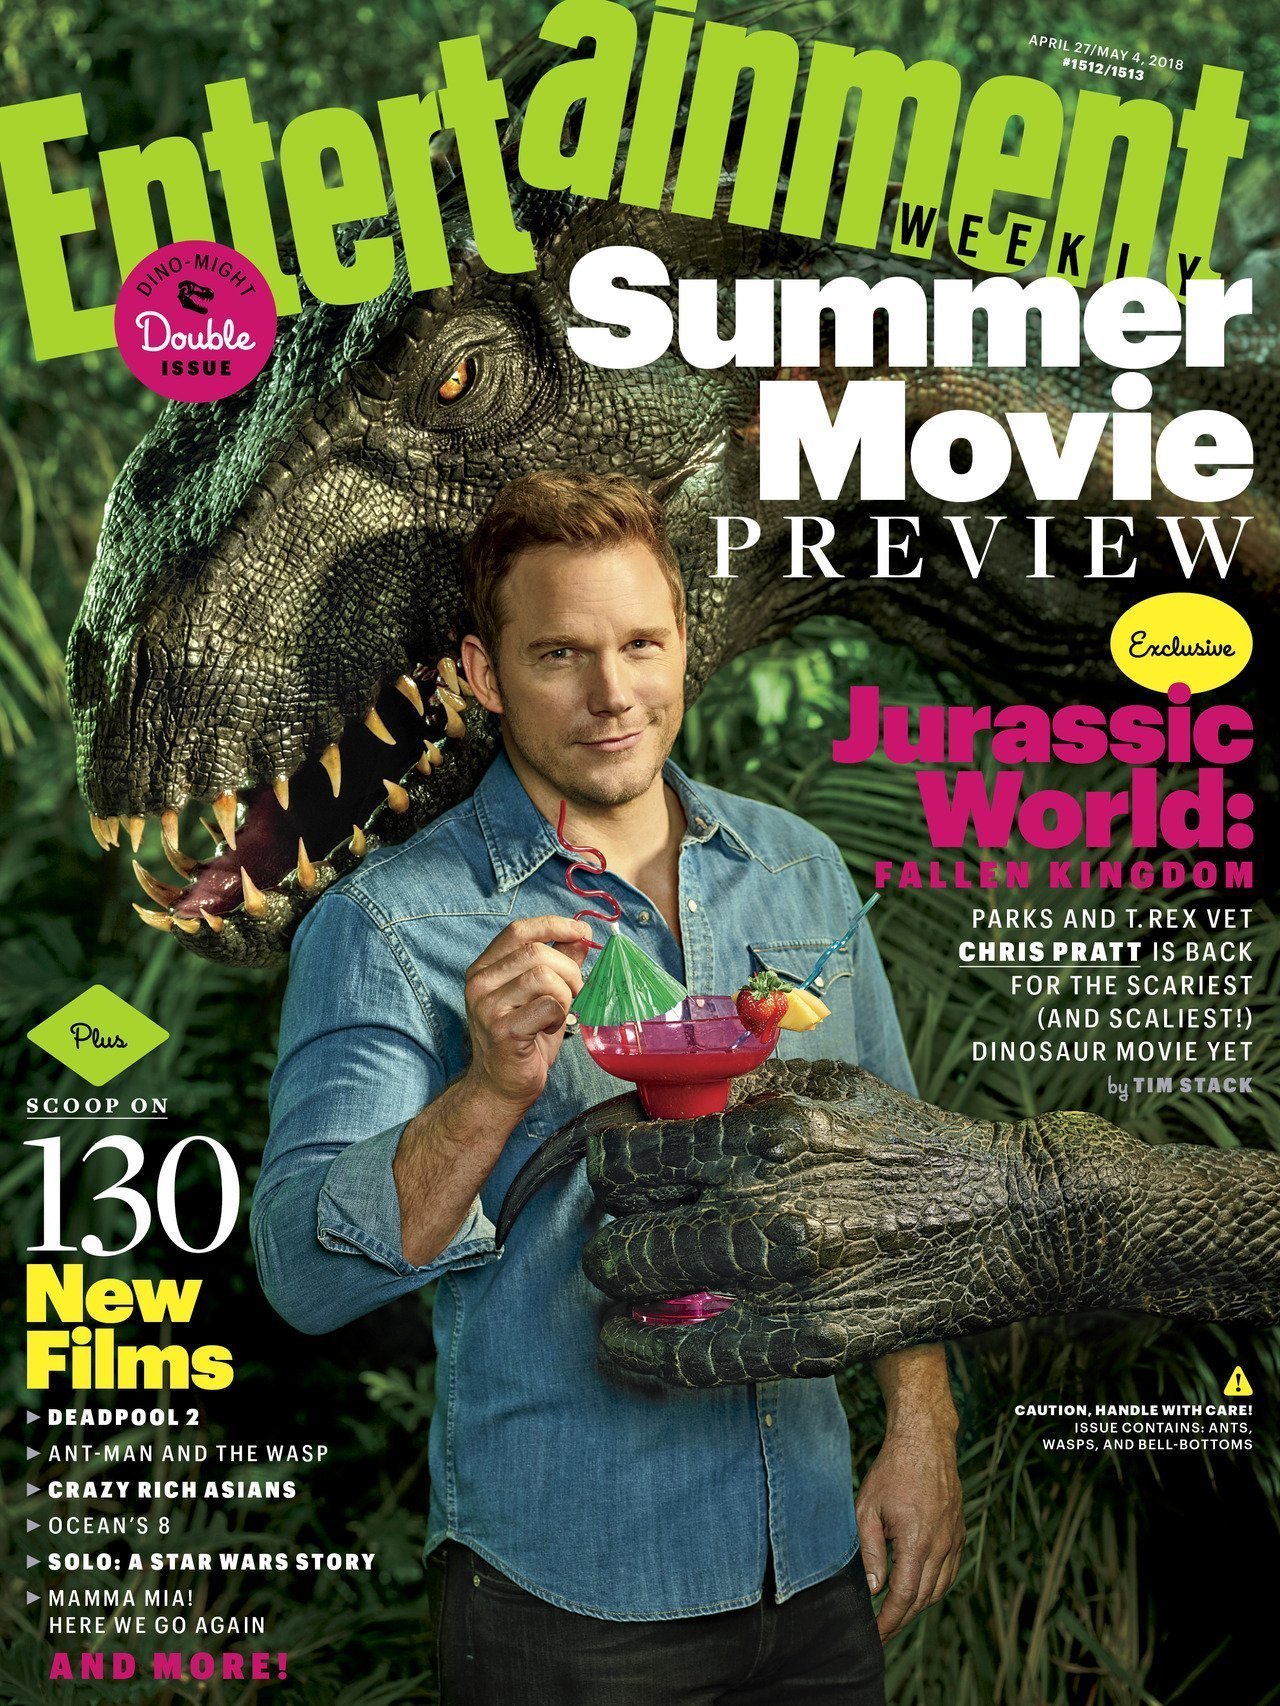 Couverture d'Entertainment Weekly consacrée à Jurassic World: Fallen Kingdom avec Chris Pratt